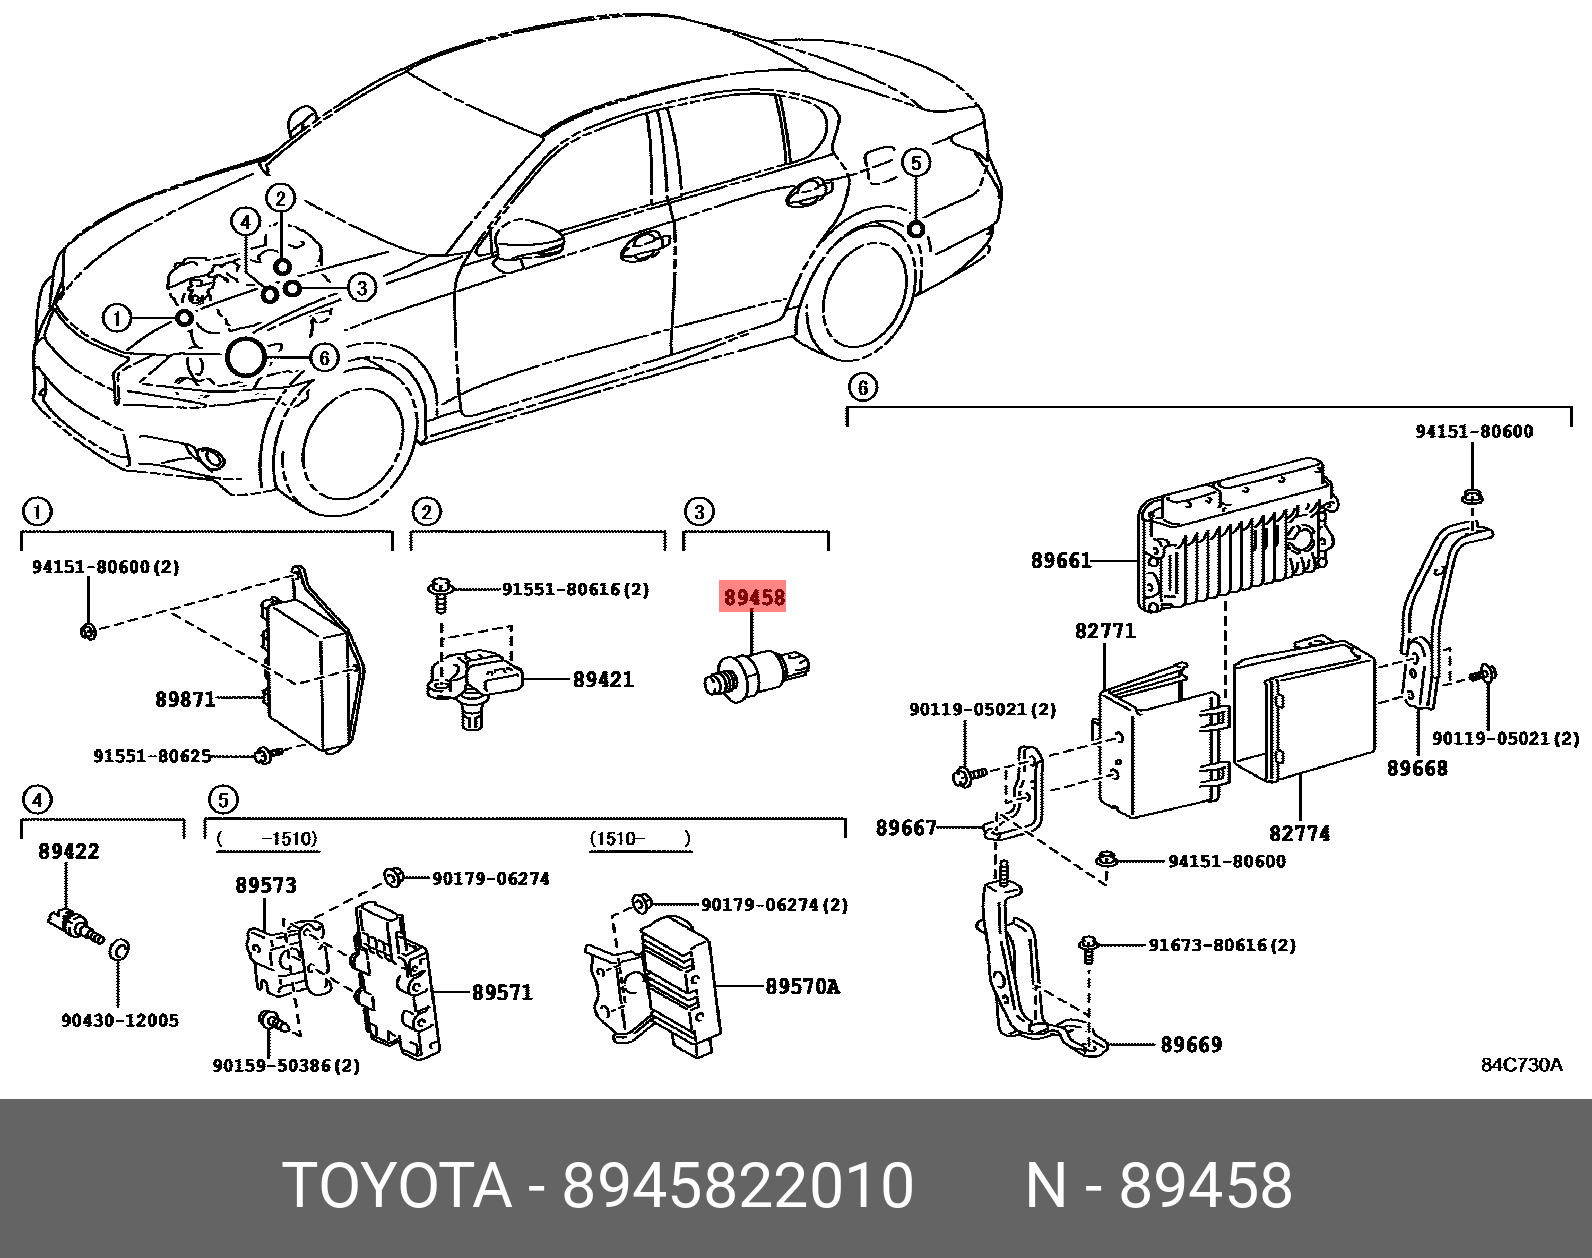 Датчик давления подачи топлива - Toyota 89458-22010